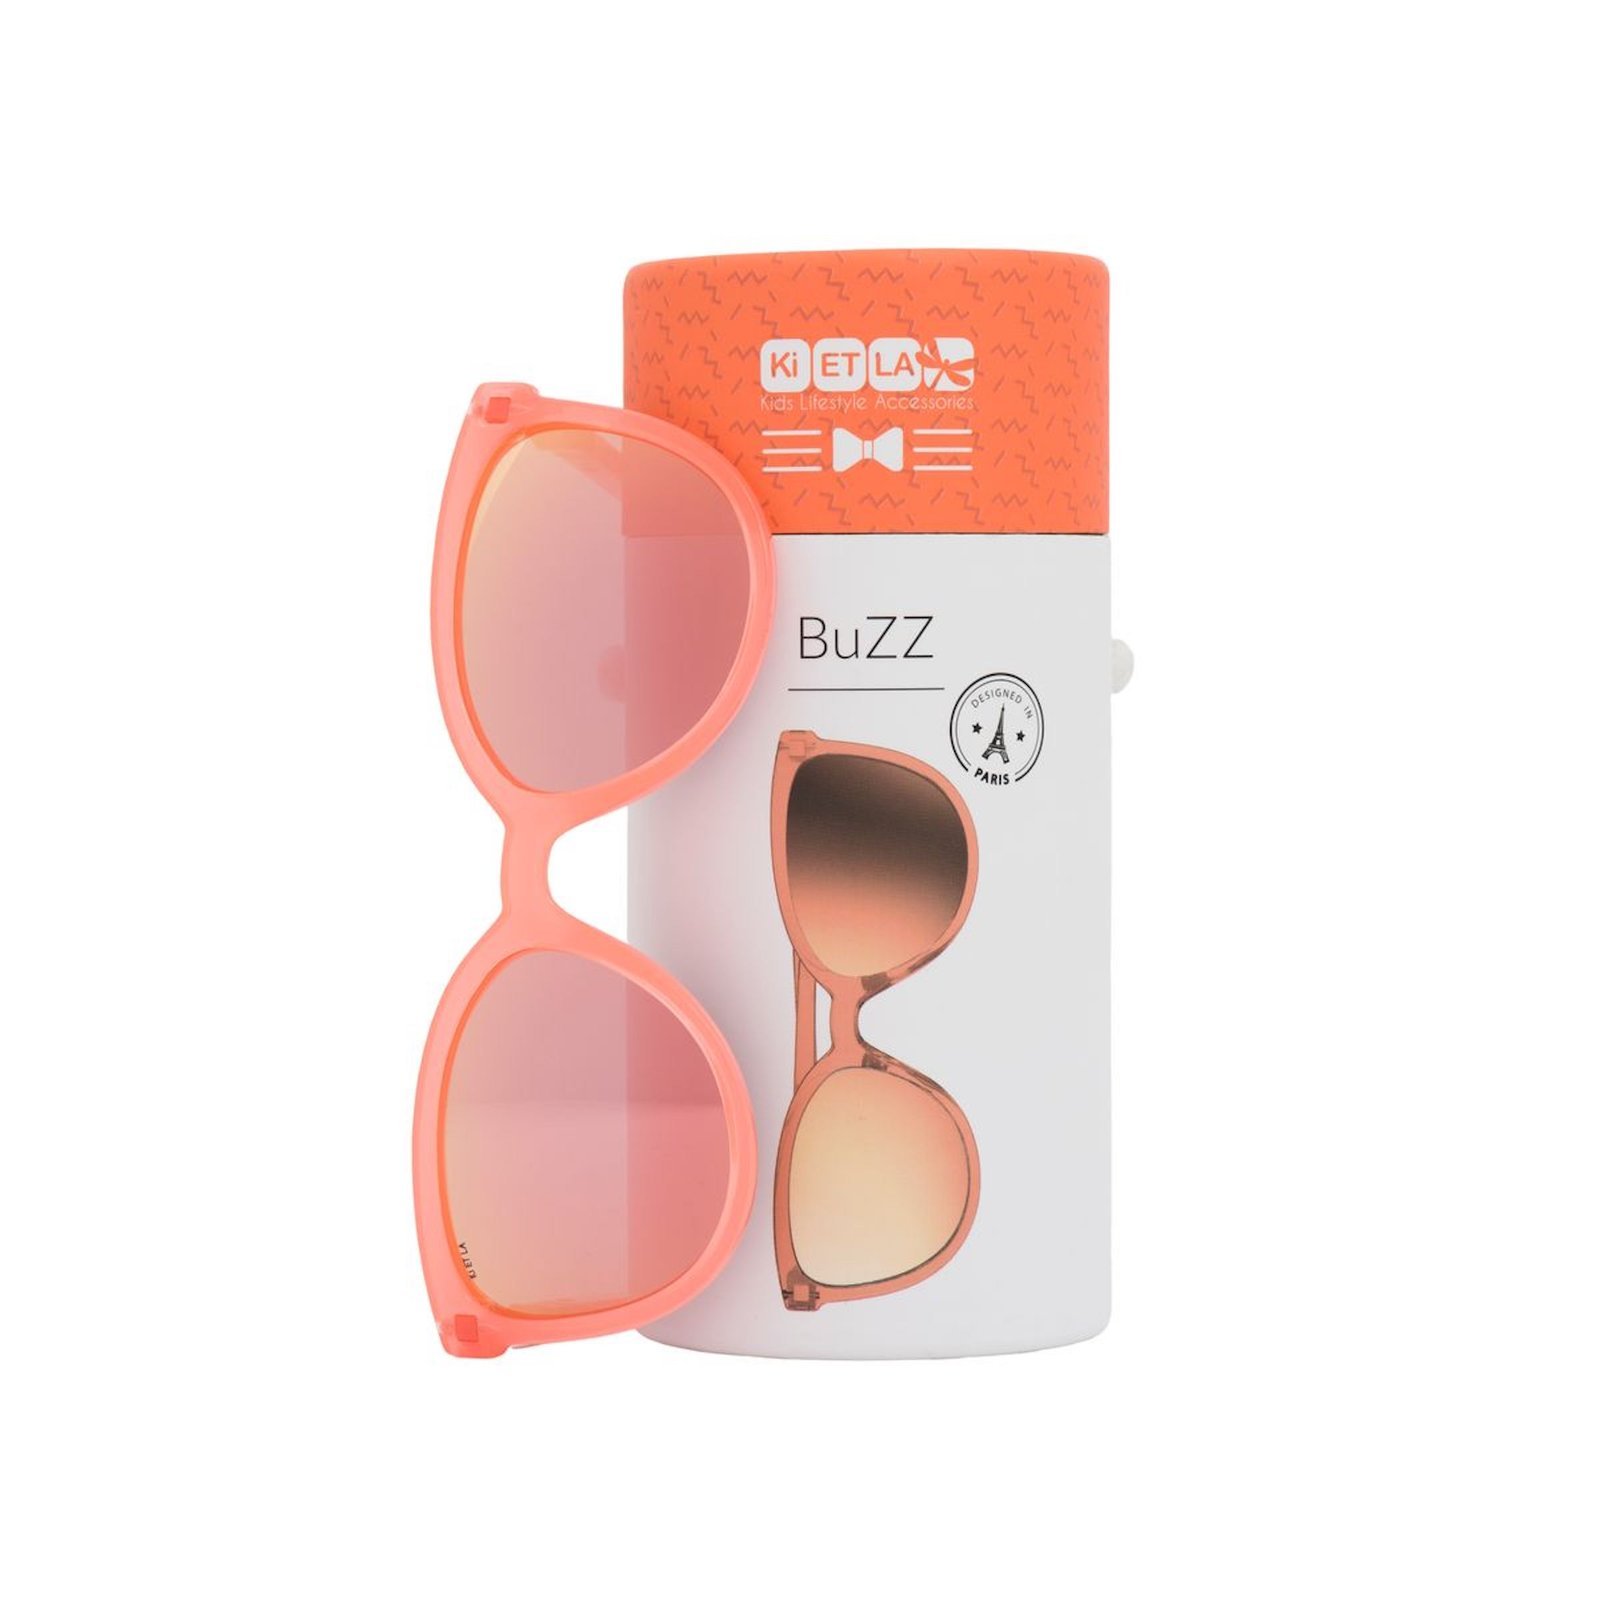 Okulary przeciwsłoneczne BuZZ 4-6 Neon | Kietla